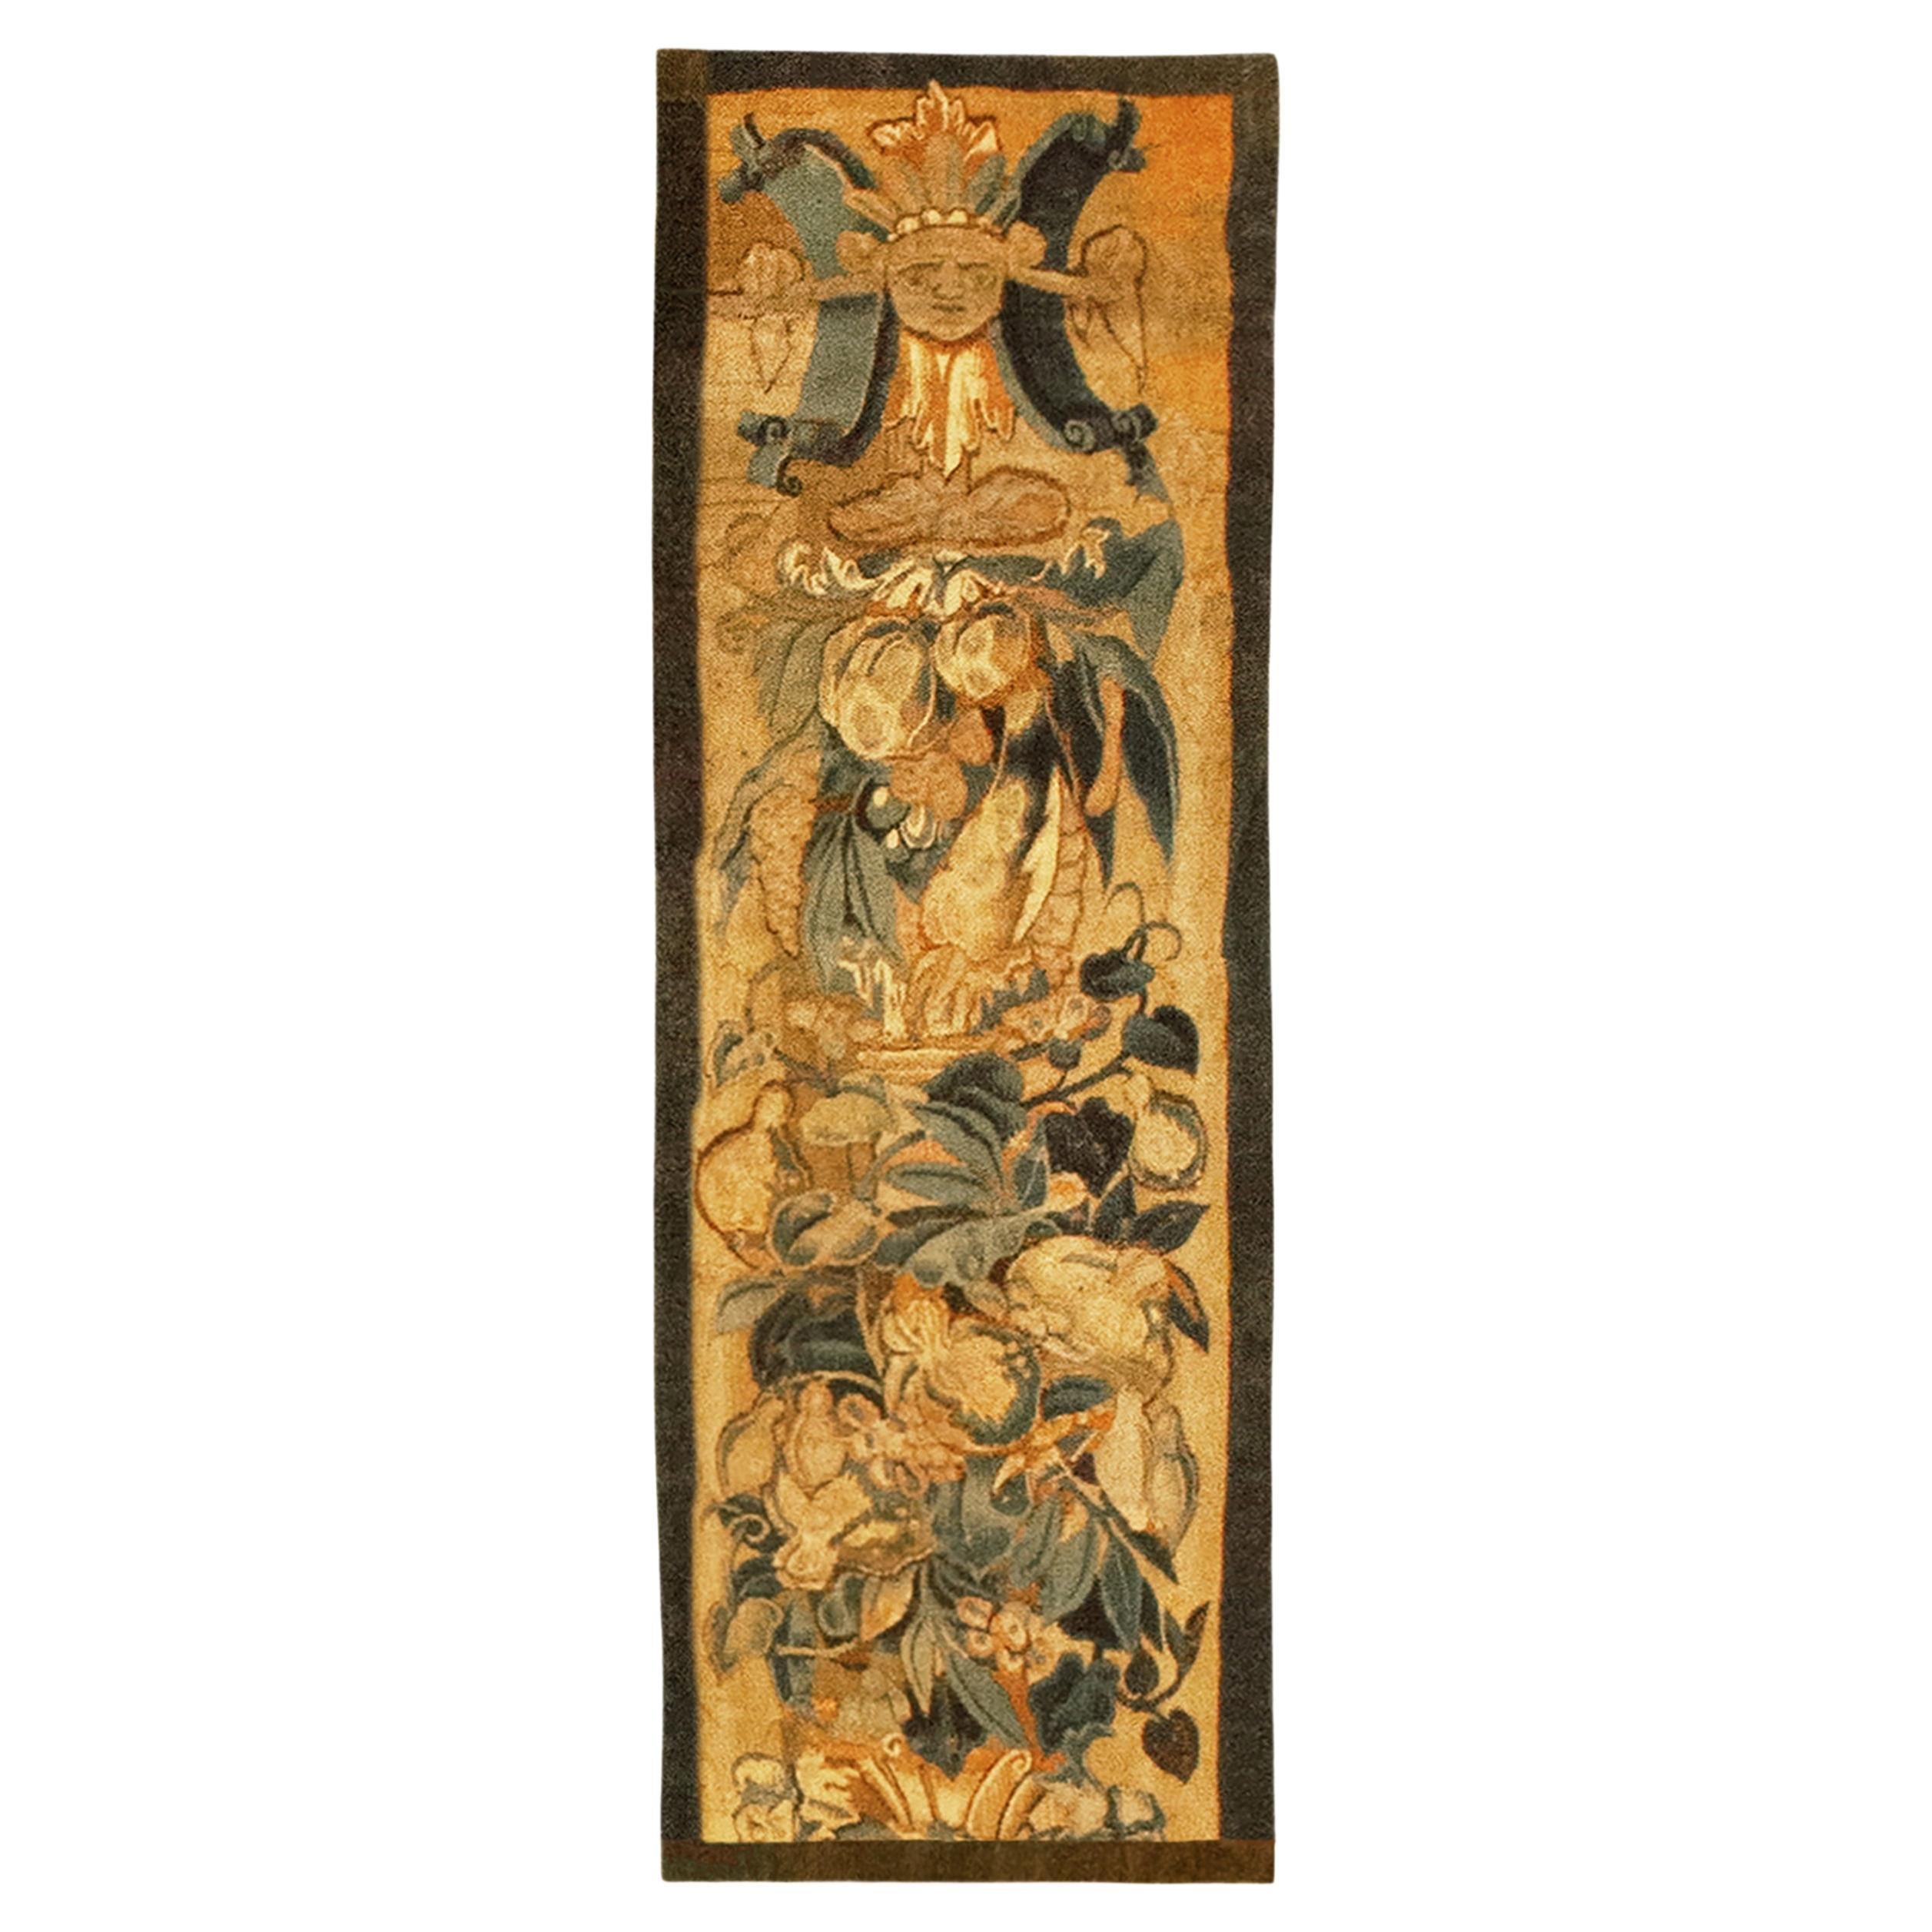 Tapisserie historique flamande de la fin du XVIe siècle, orientée verticalement, avec des fleurs